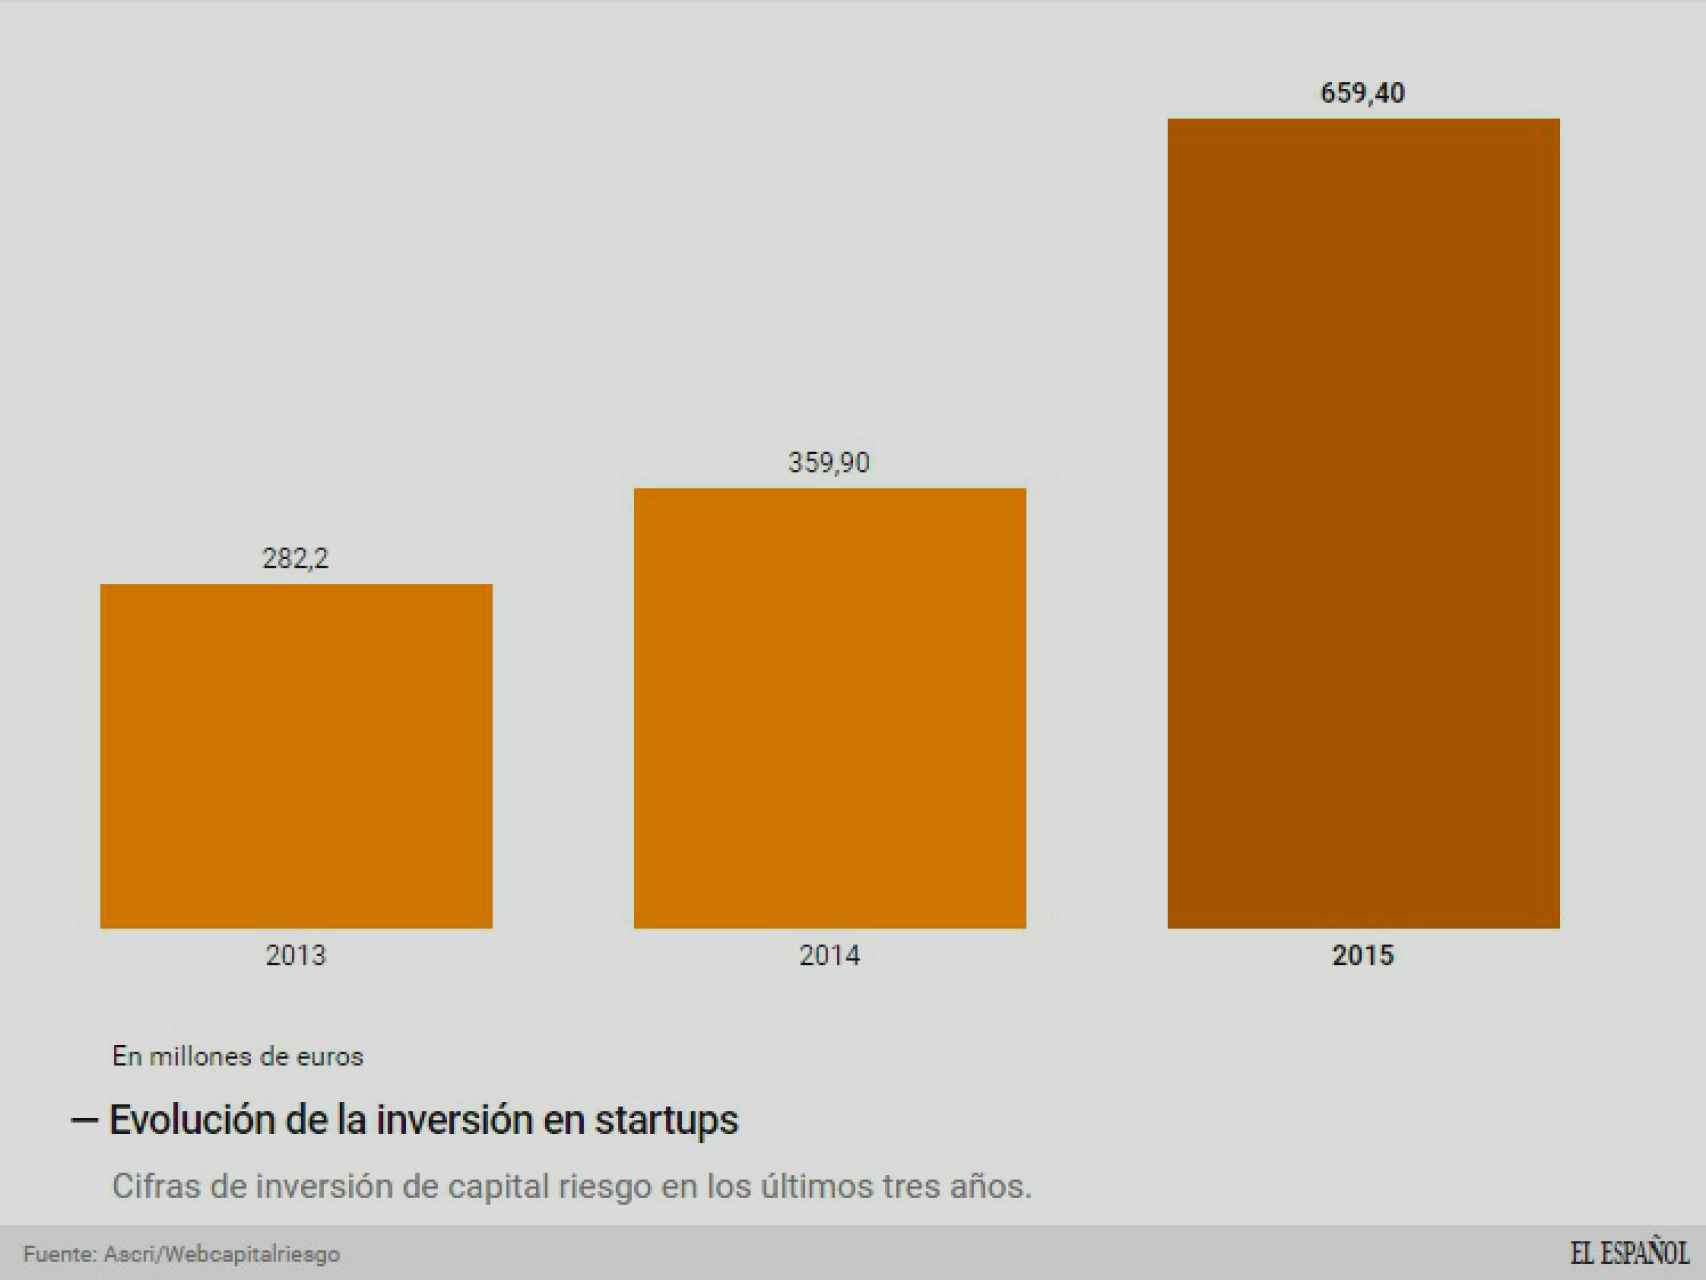 Evolución de la inversión de capital riesgo en startups.